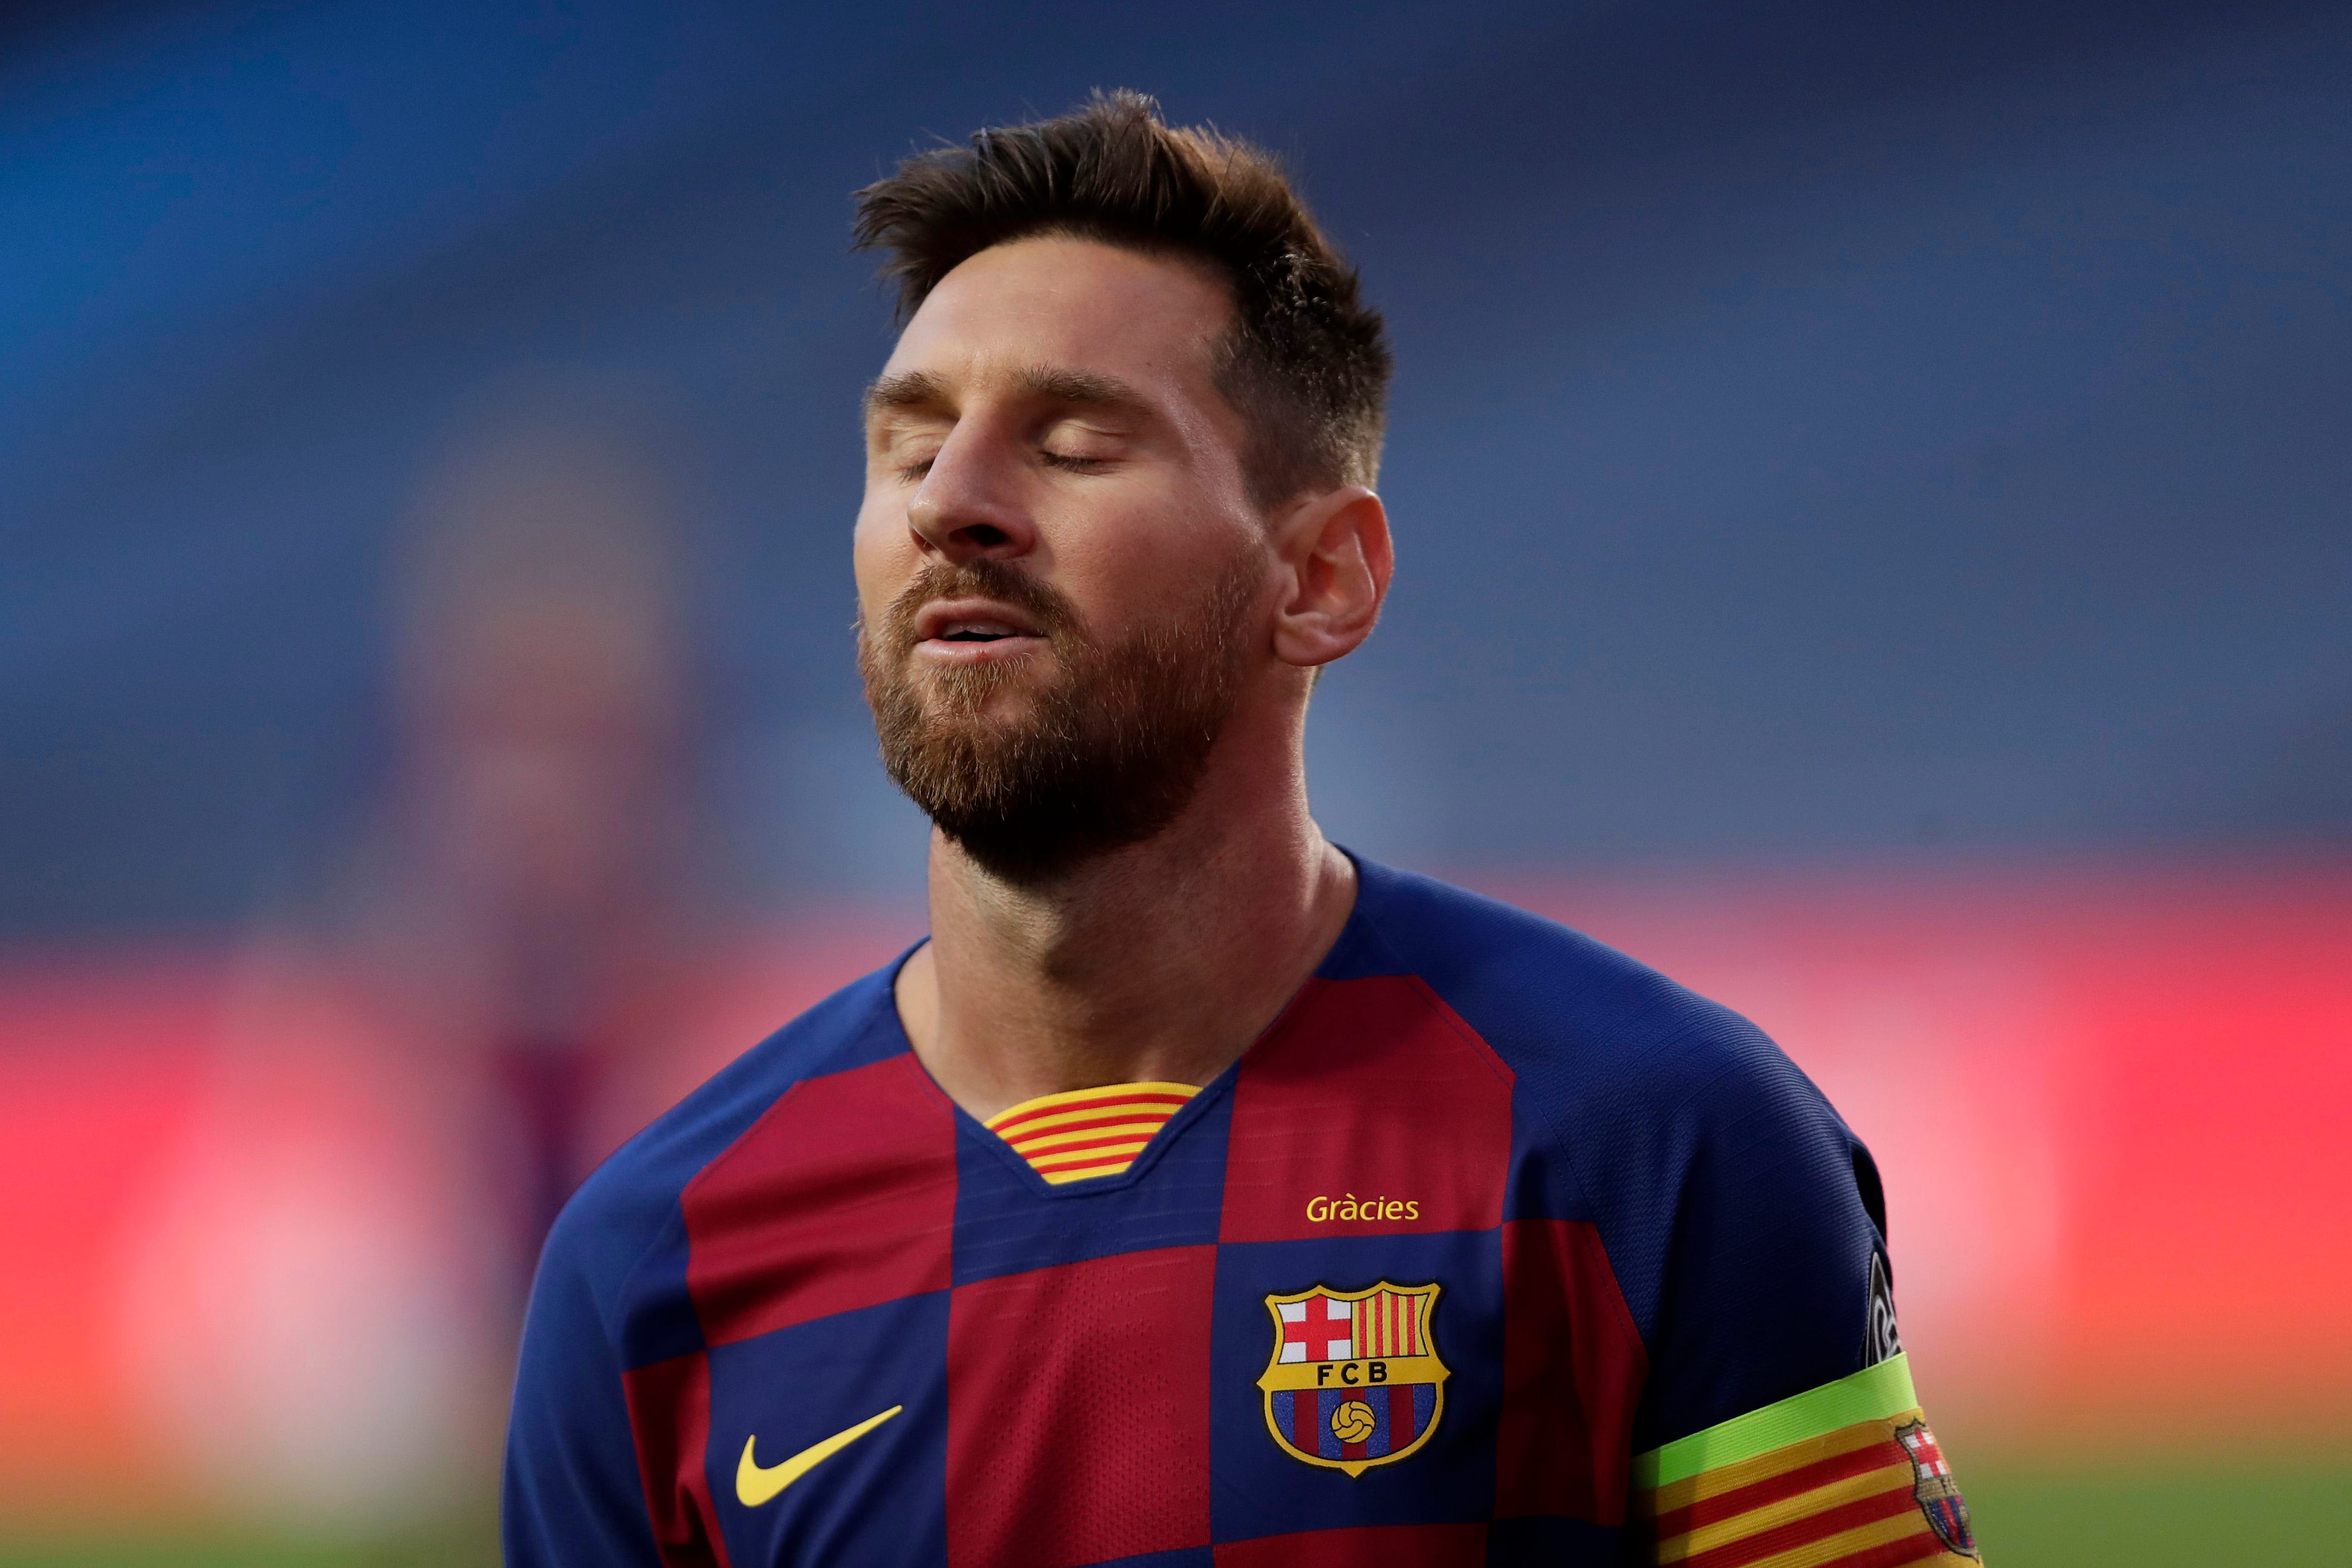 Siêu sao bóng đá Lionel Messi luôn là mẫu người đầy tài năng, chuyển động tinh tế và tài năng bất tận. Hãy xem hình ảnh này để có được cái nhìn gần gũi hơn về cầu thủ này và sự nghiệp của anh ấy.